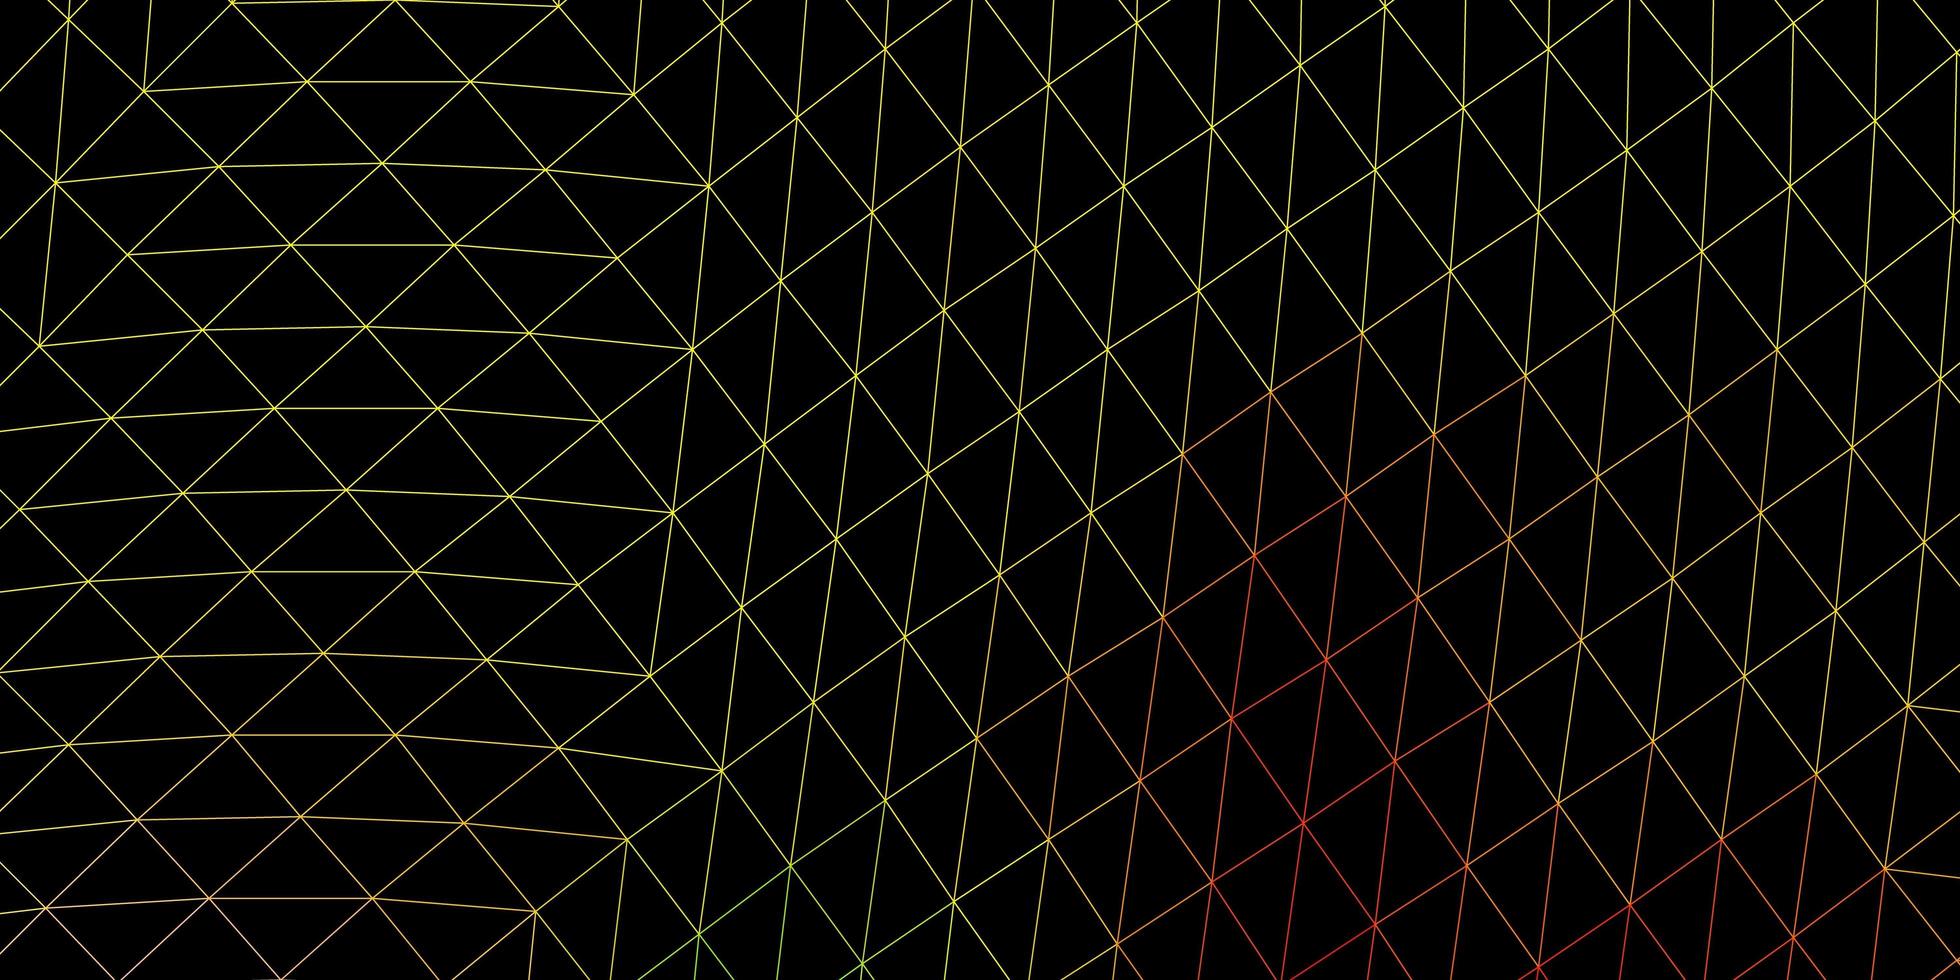 luz padrão poligonal do vetor multicolor.